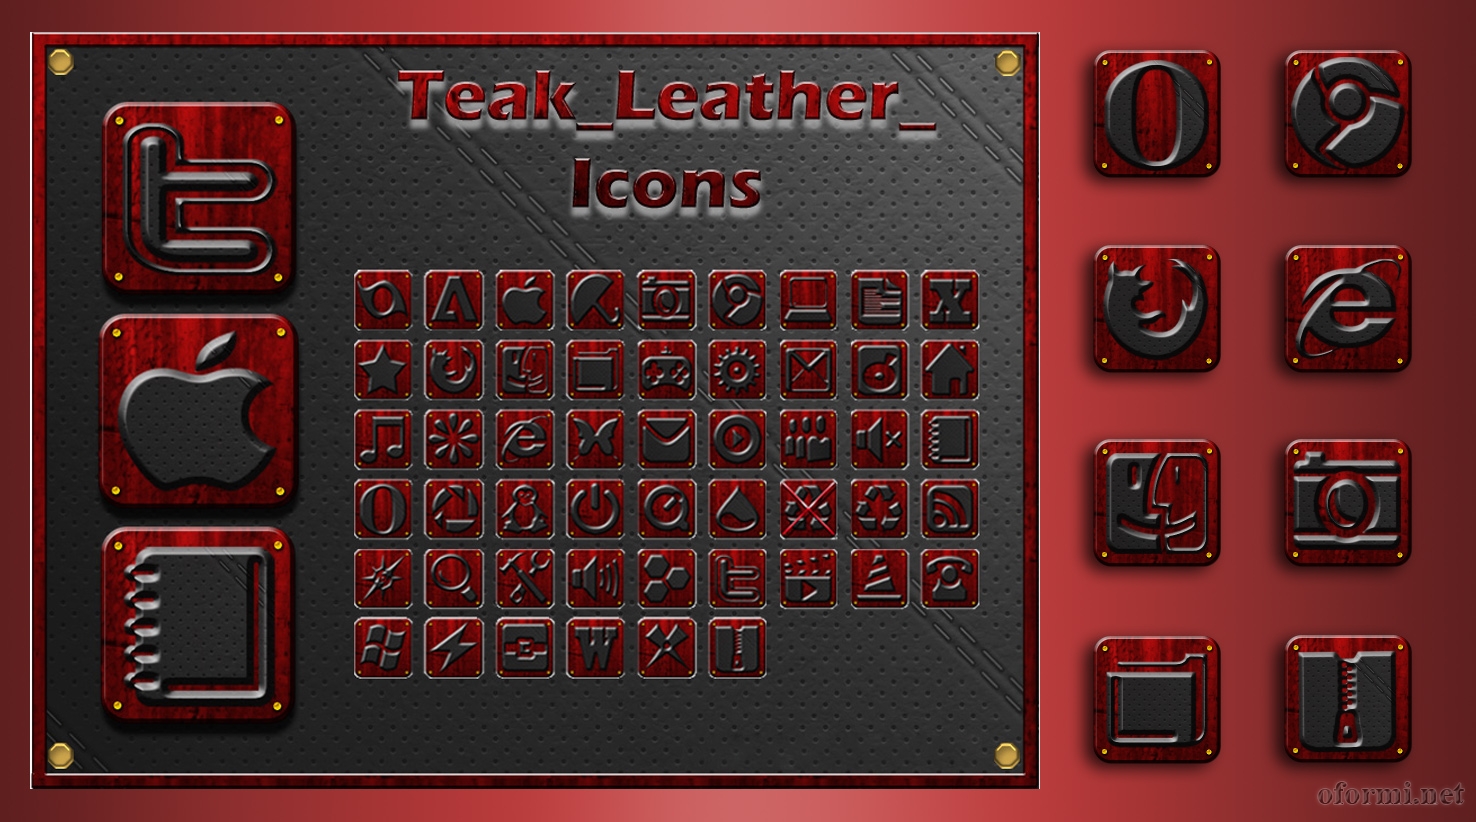 Teak Leather